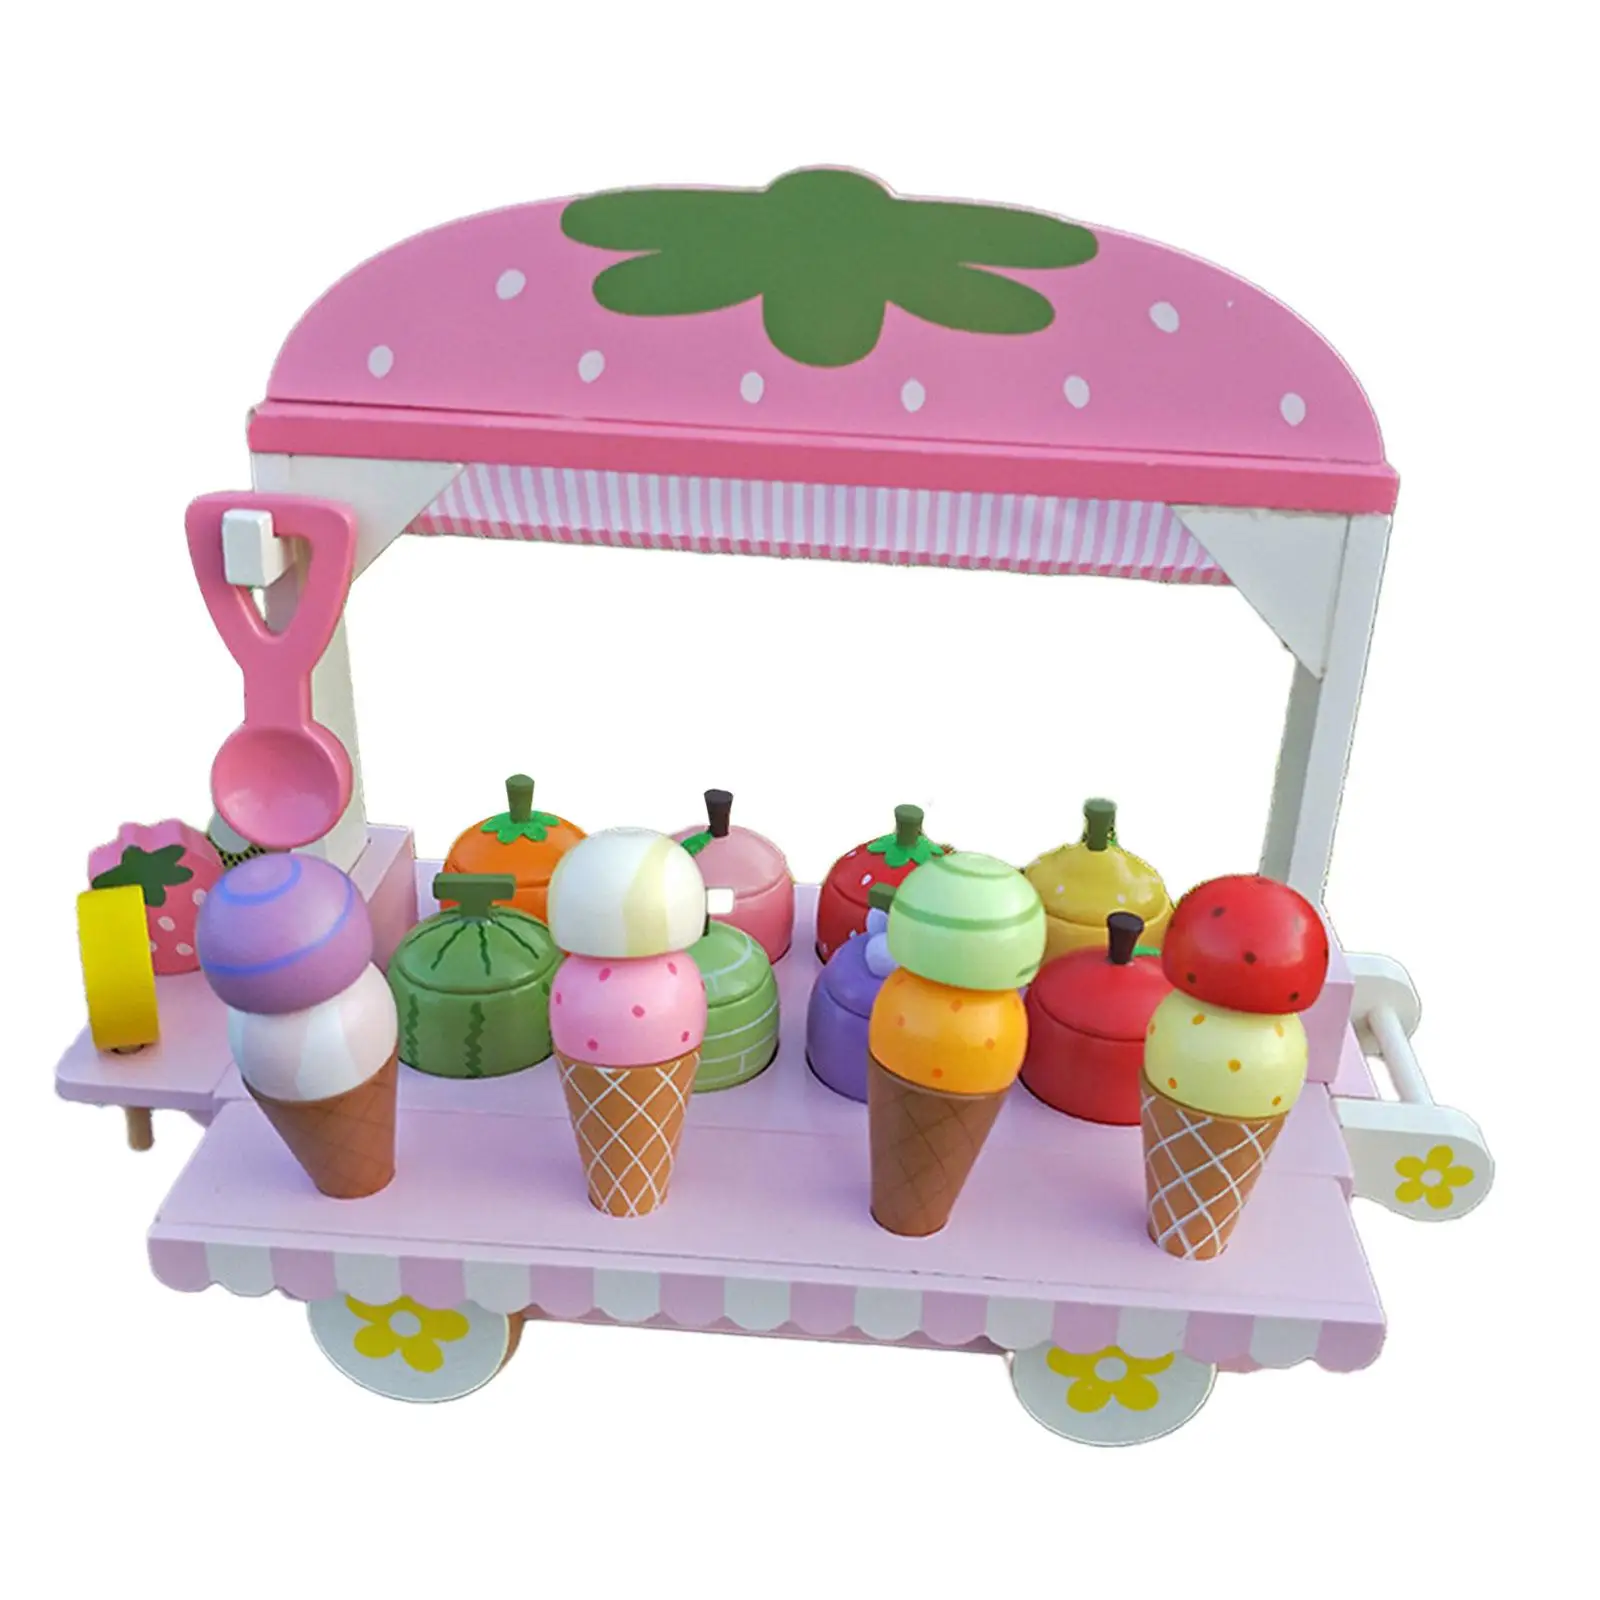 

Тележка для мороженого, игрушечный набор для ролевых игр с ложкой, игрушки для ролевых игр, имитация мороженого для девочек и мальчиков, подарки